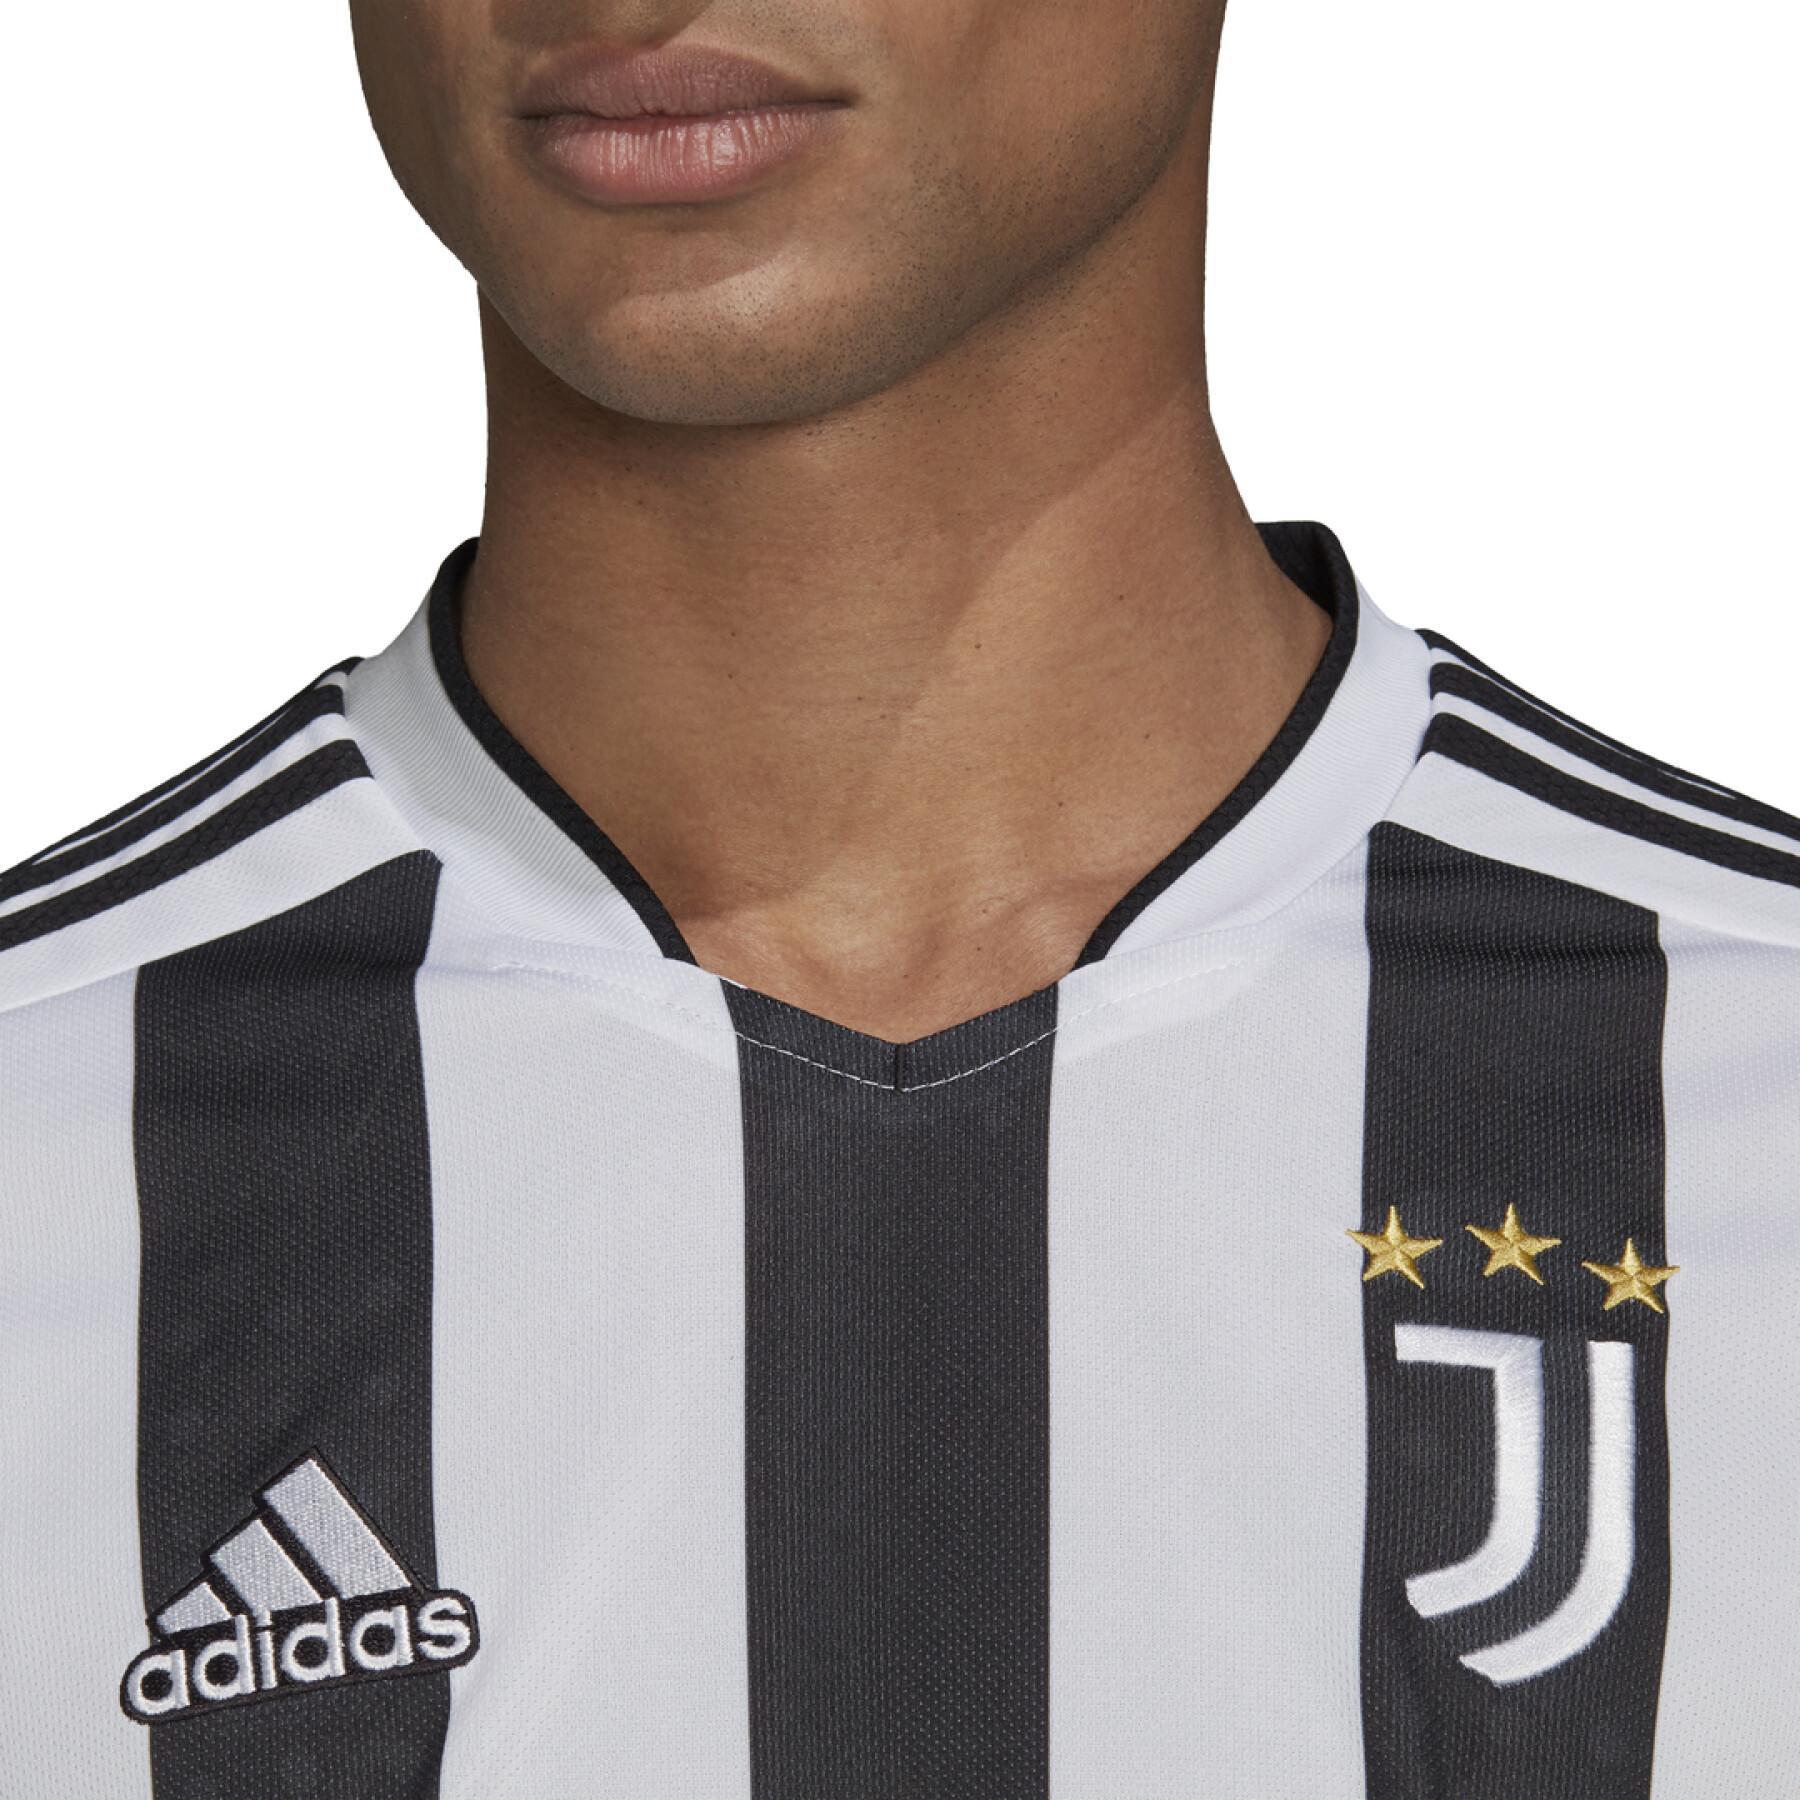 Home jersey Juventus 2021/22